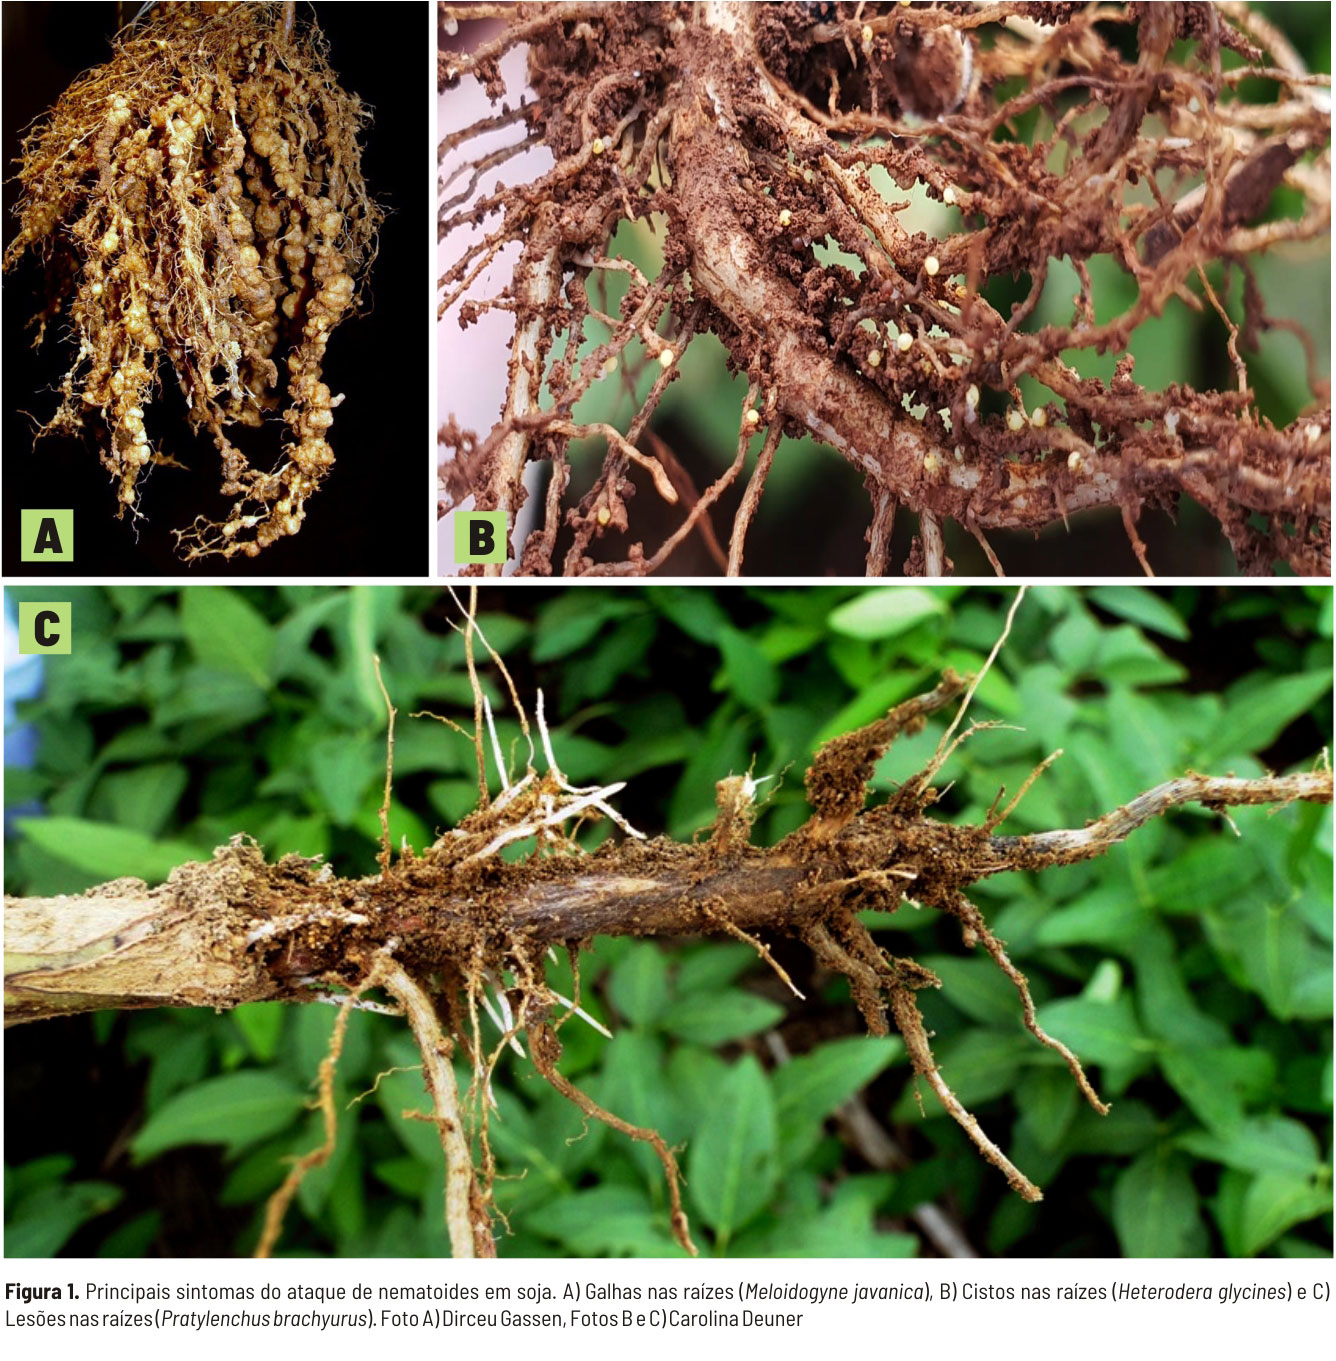 Sintomas de ataque de nematoides na soja, provocando galhas, cistos e lesões nas raízes